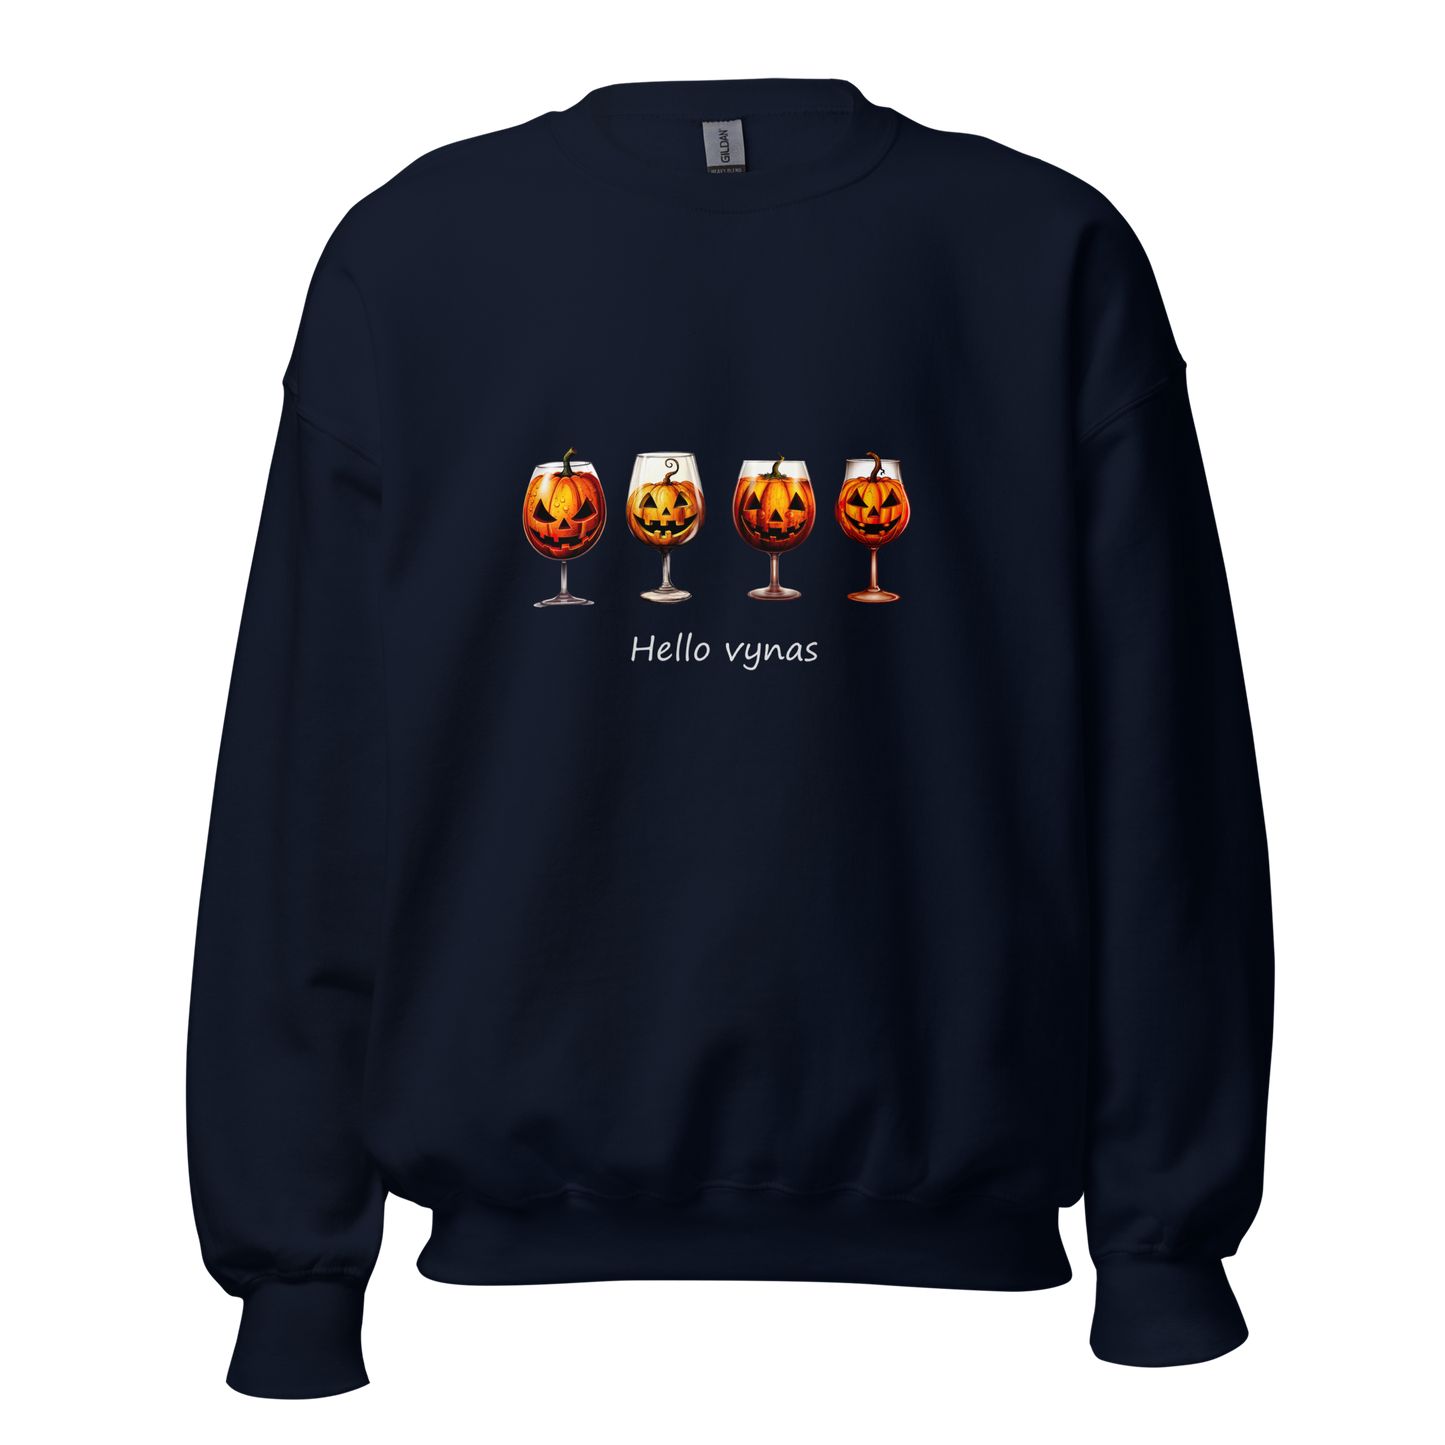 Unisex Halloween Sweater: Hello wine